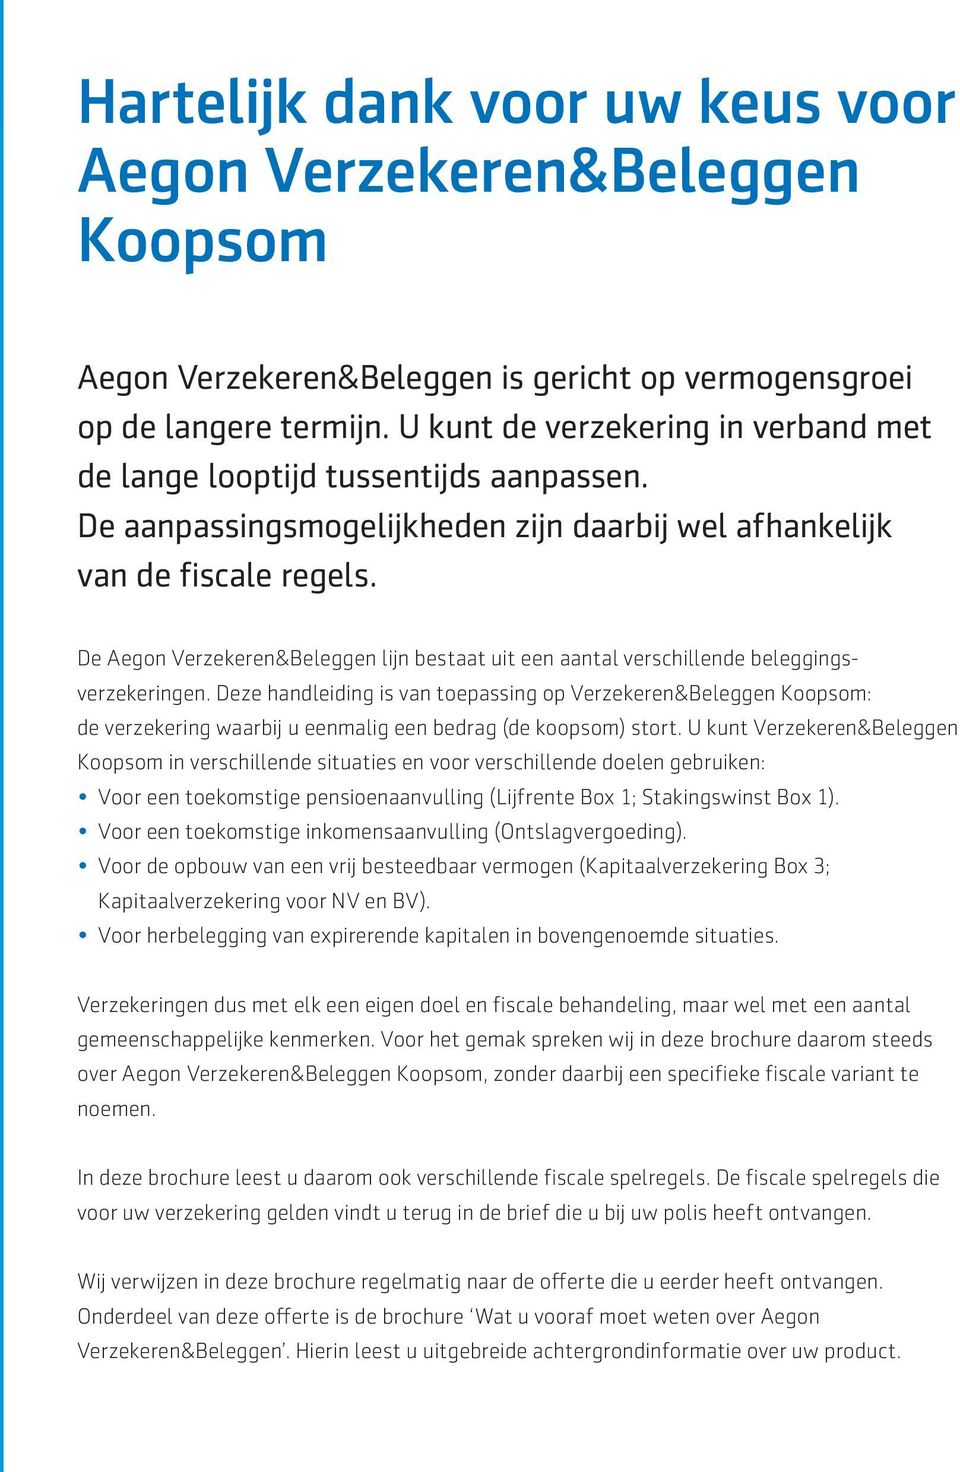 De Aegon Verzekeren&Beleggen lijn bestaat uit een aantal verschillende beleggingsverzekeringen.